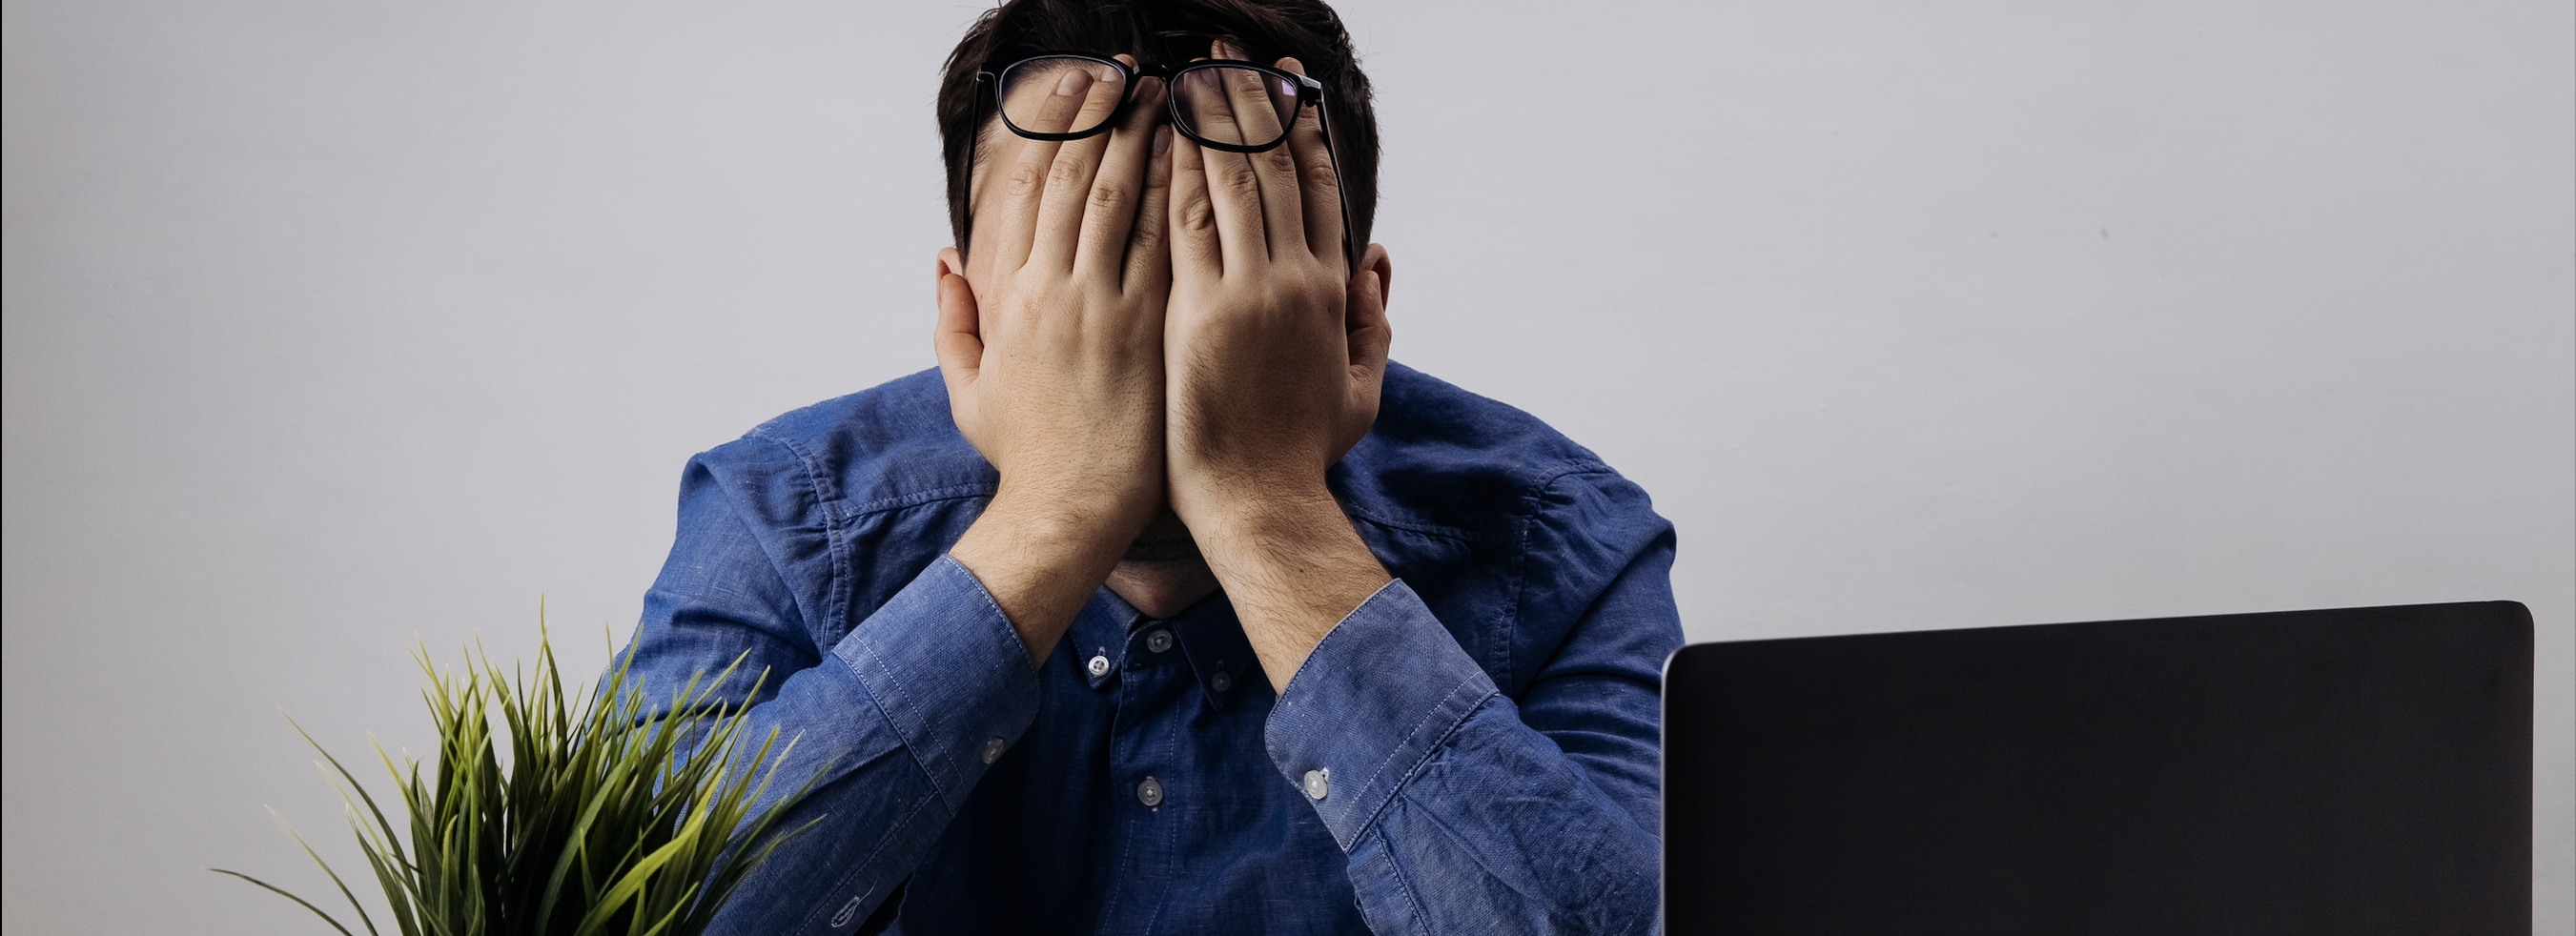 Síndrome de Burnout: Quais os Sintomas e Como Tratá-la